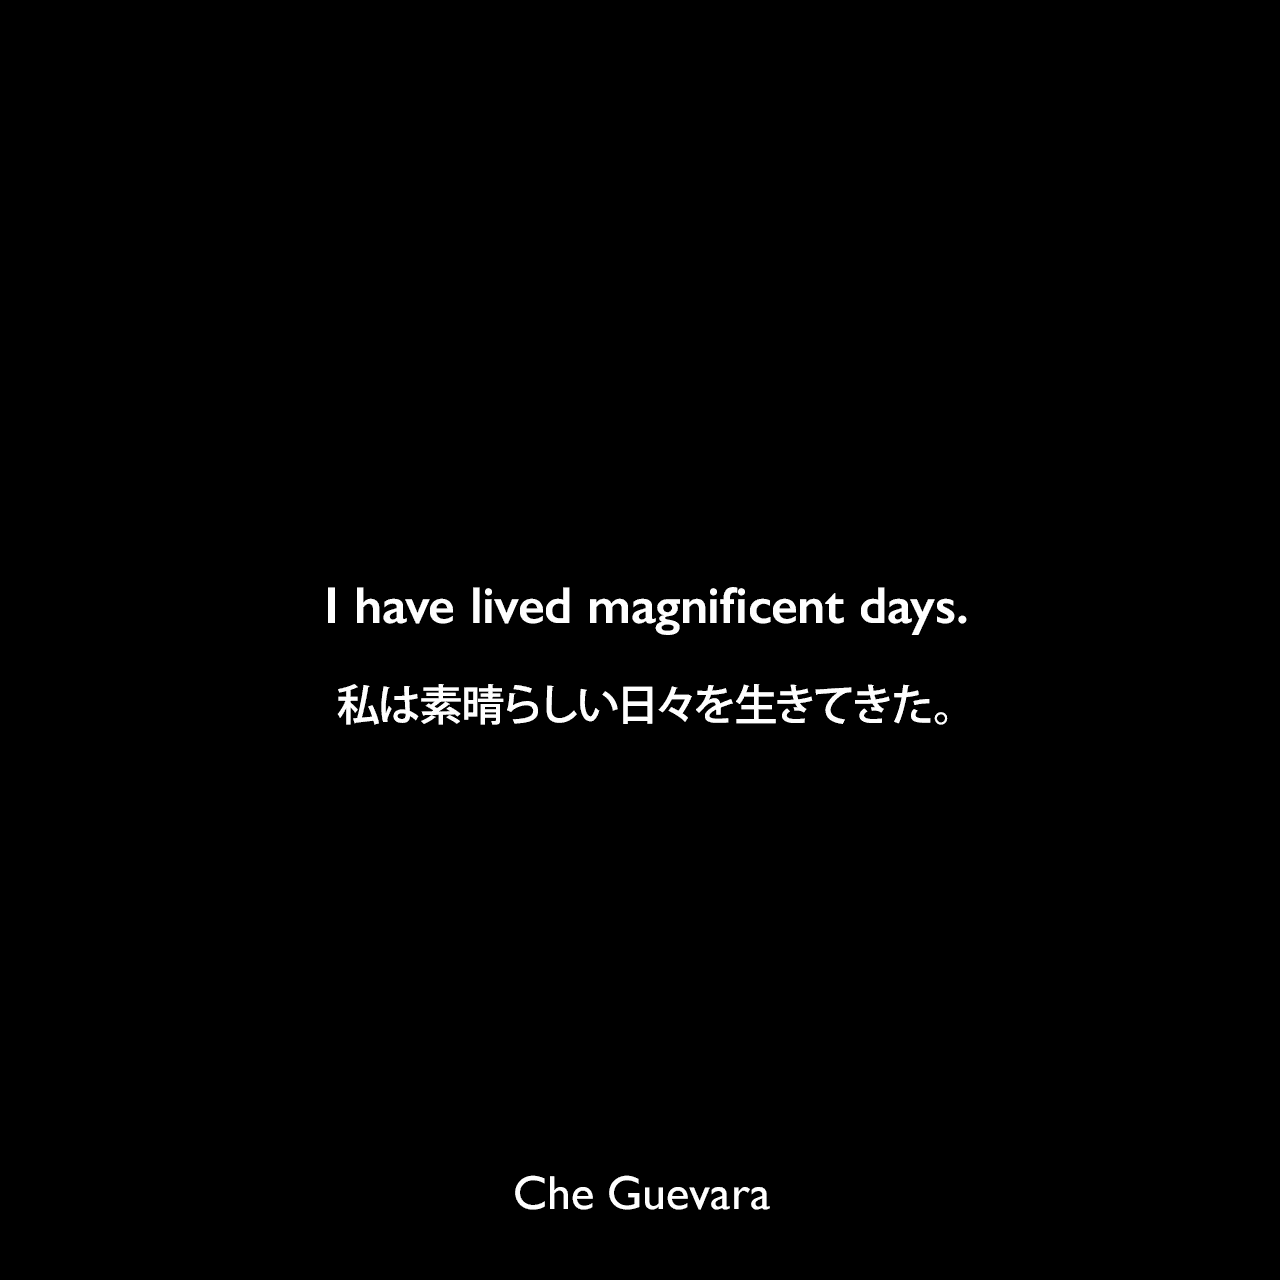 I have lived magnificent days.私は素晴らしい日々を生きてきた。- 1965年4月1日「チェからフィデル・カストロへの別れの手紙」よりChe Guevara